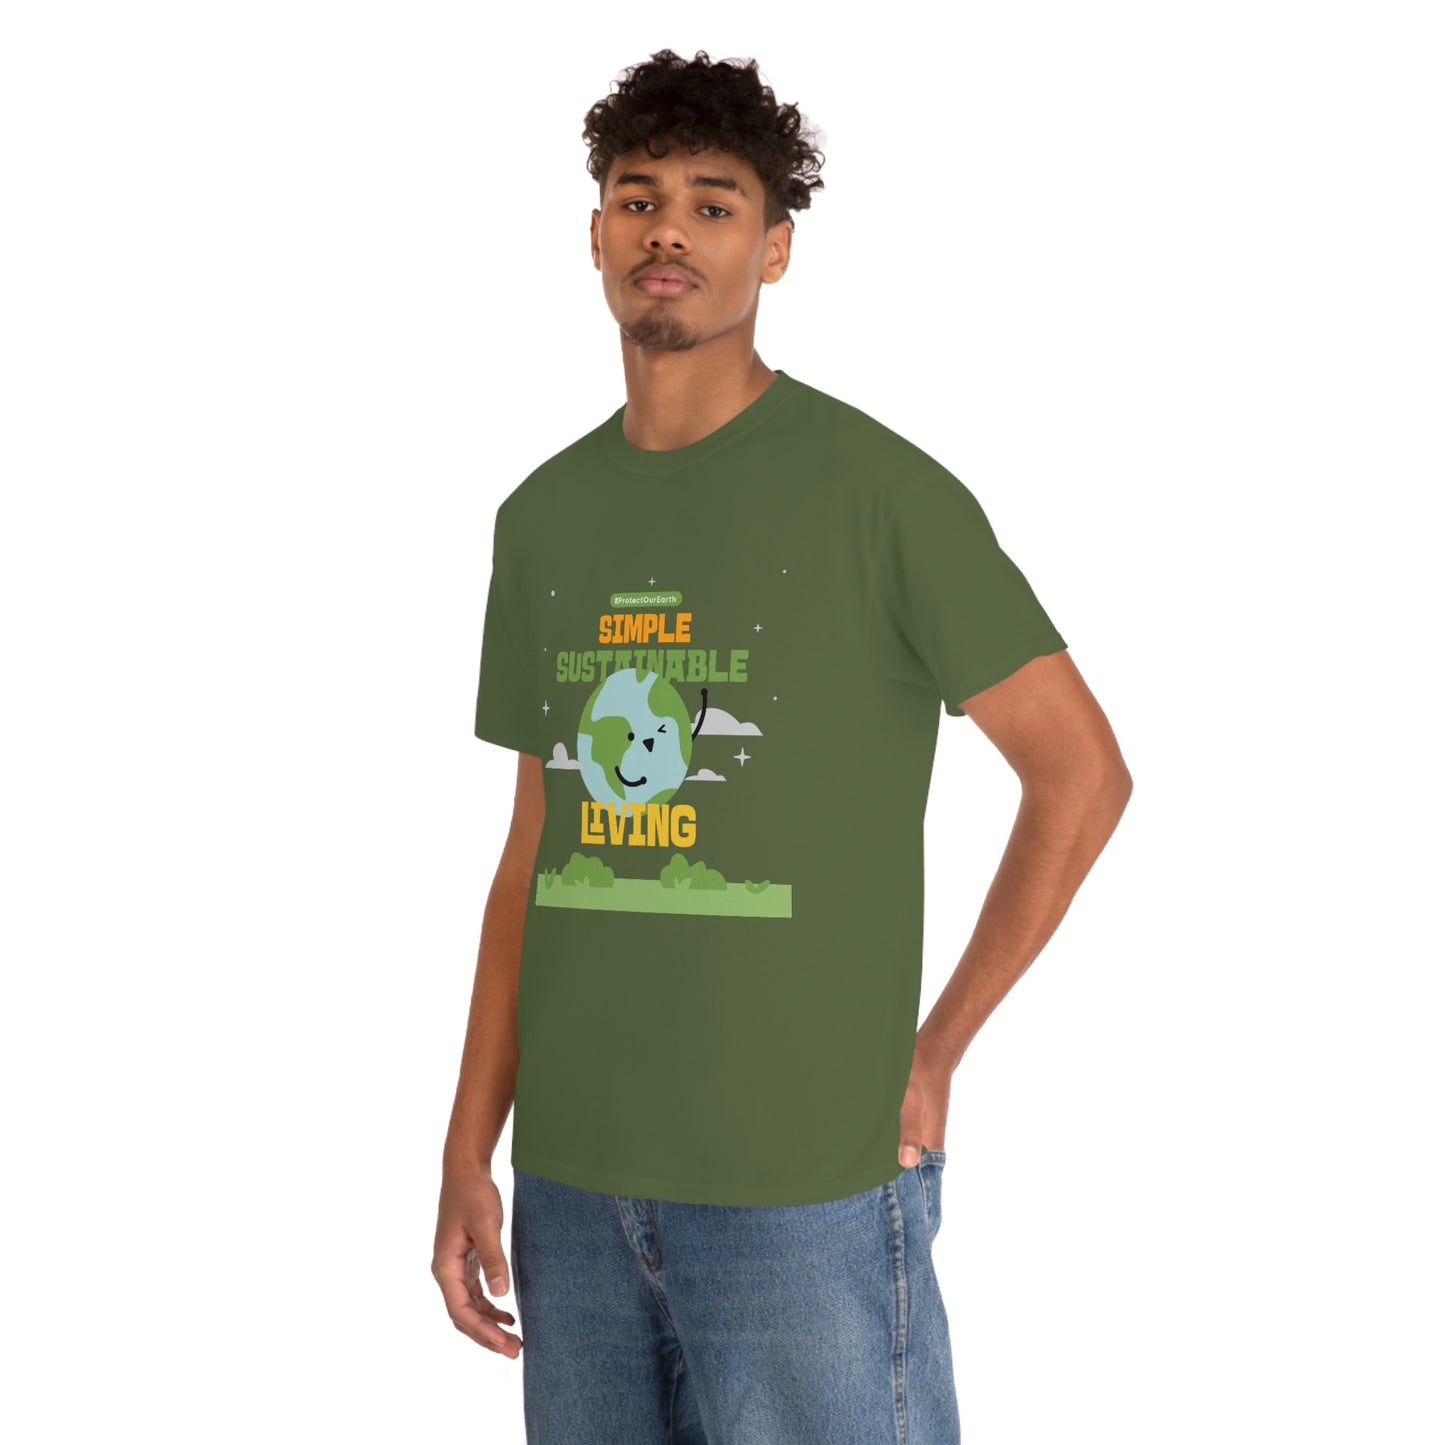 Slim dark-skinned man wearing the green shirt